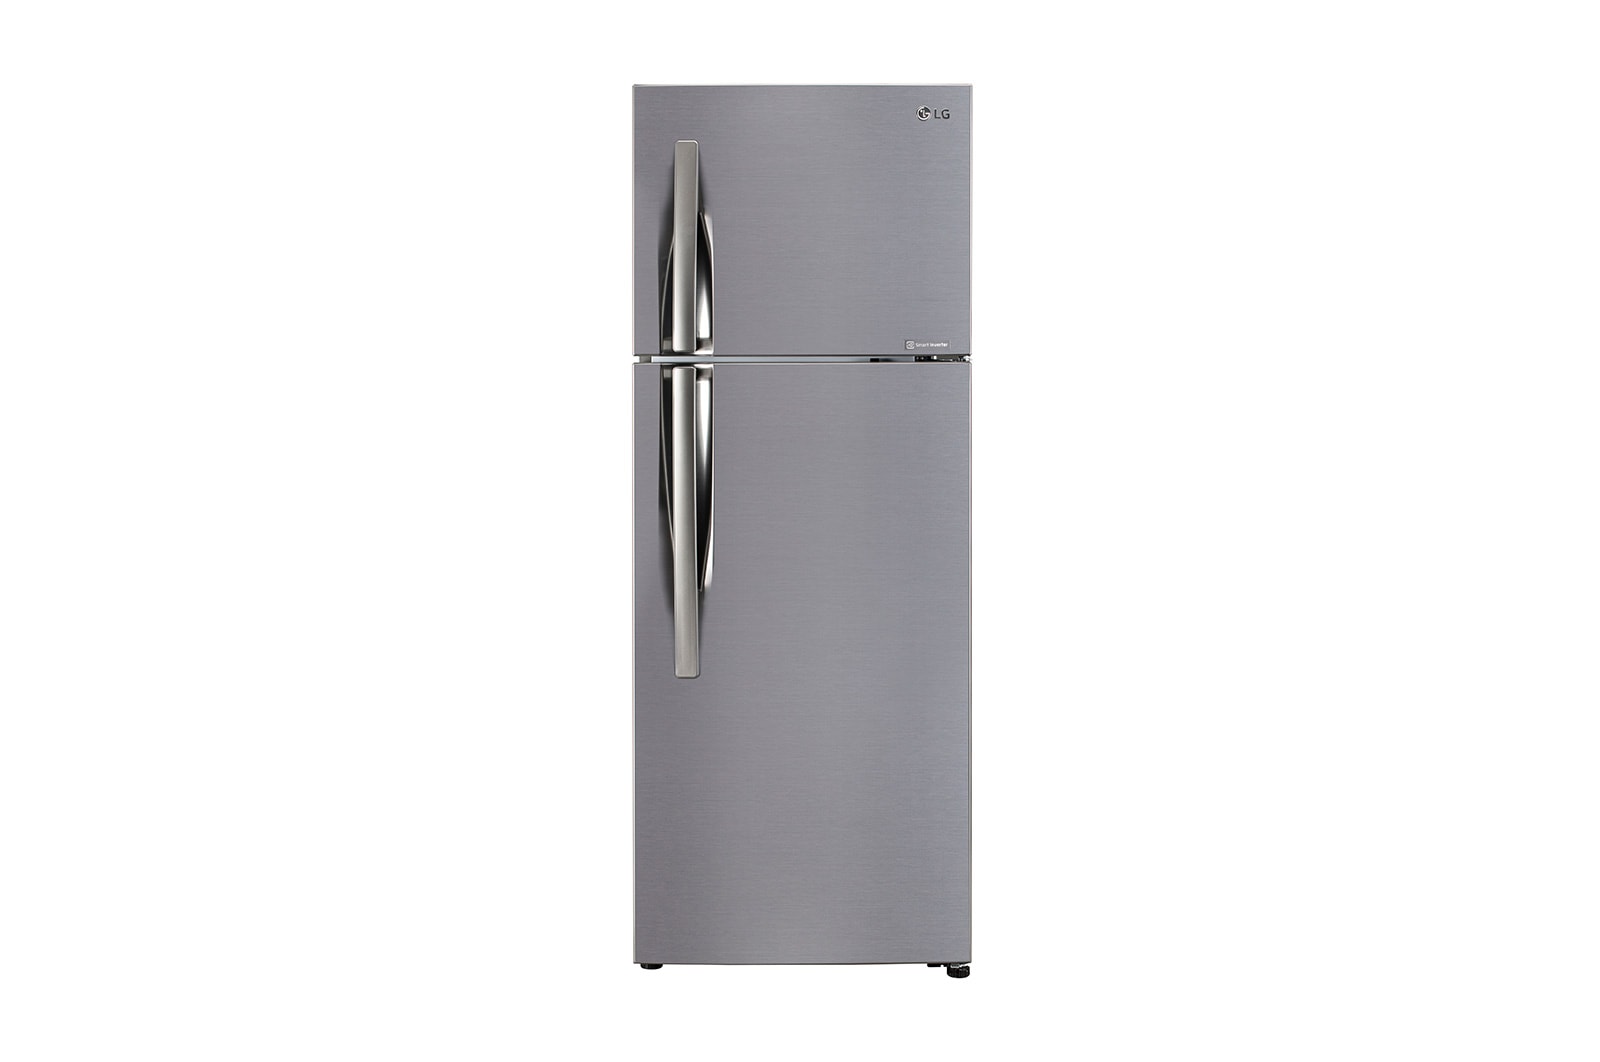 LG GL-C322KPZY double door refrigerator front view